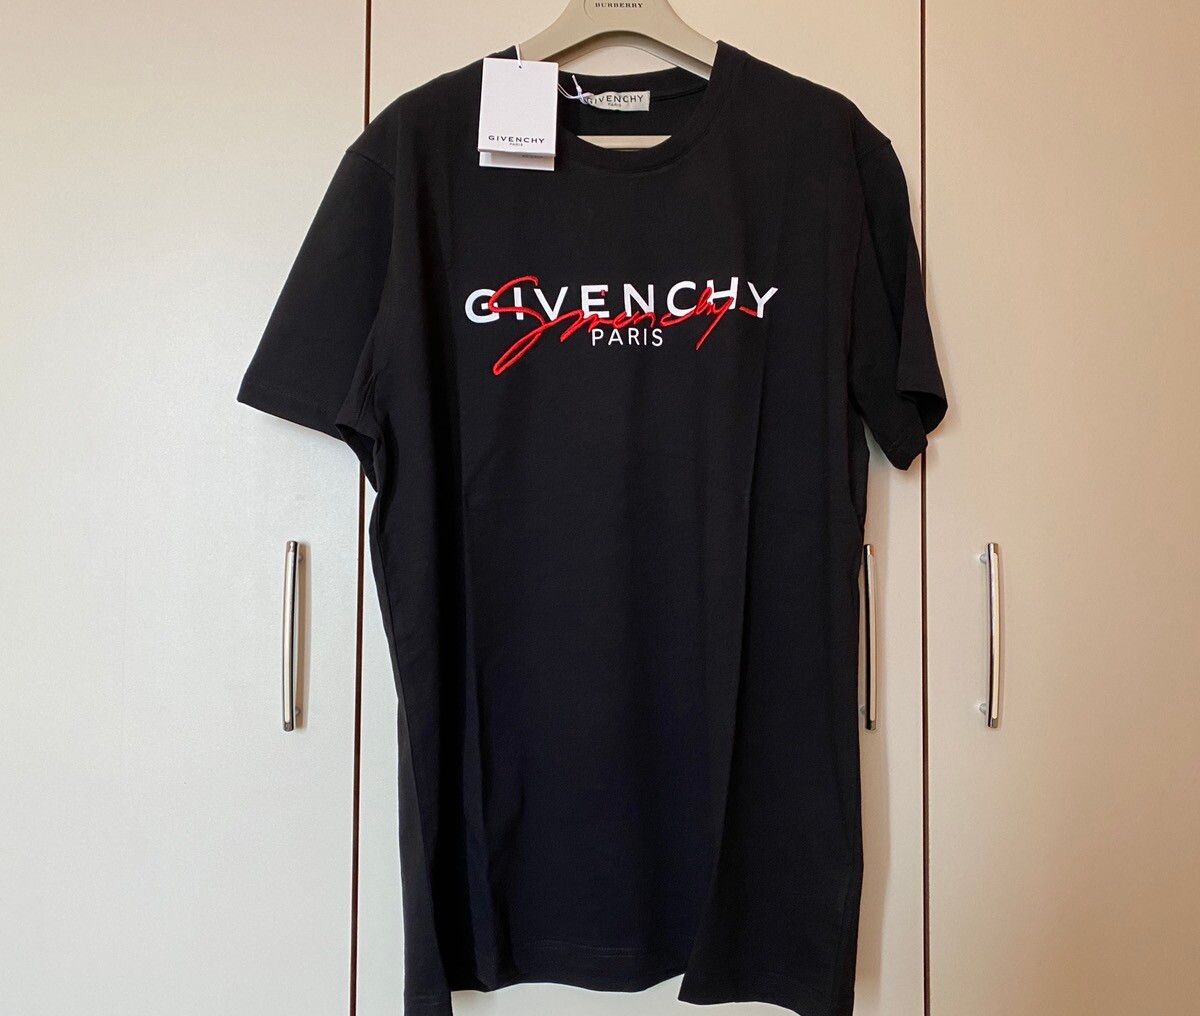 Givenchy Givenchy Paris Signature Black T-shirt Large Size BM70UK3002 Size US L / EU 52-54 / 3 - 1 Preview